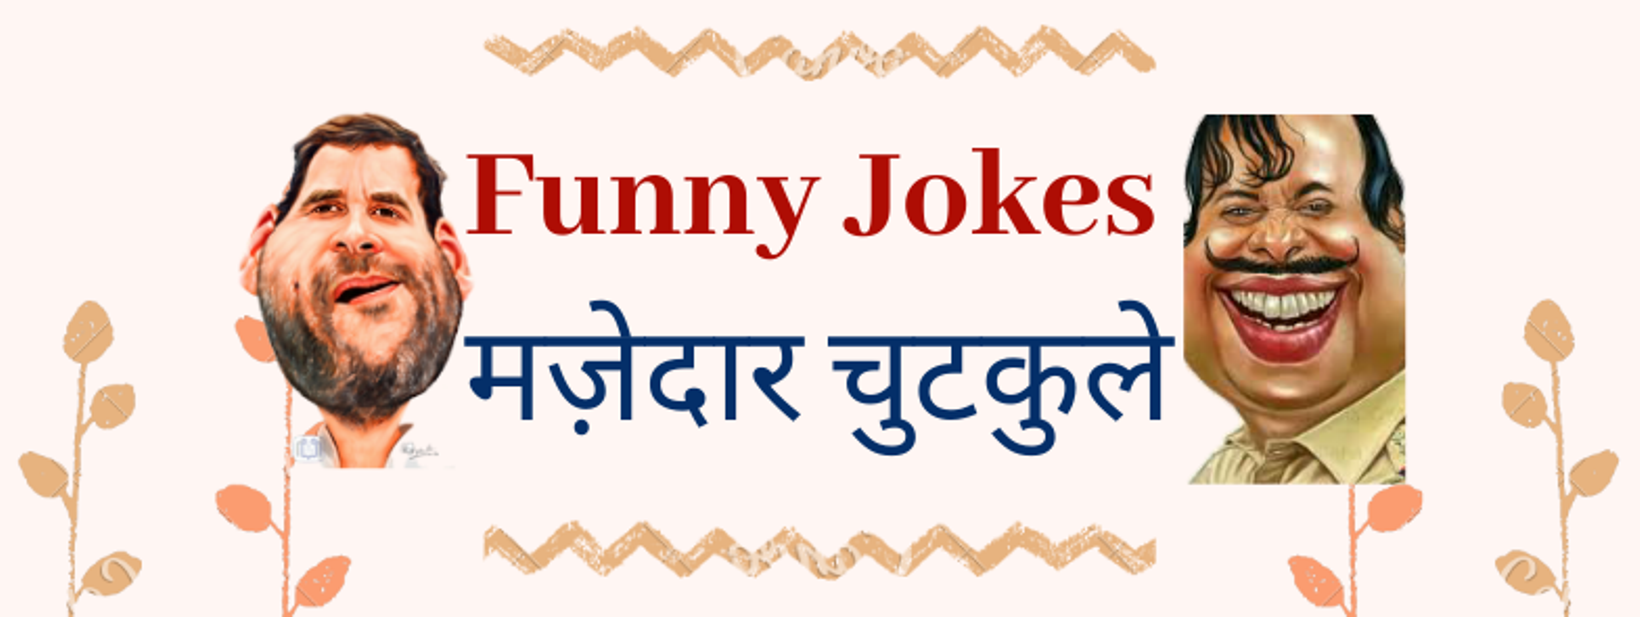 Funny Jokes मज़ेदार चुटकुले